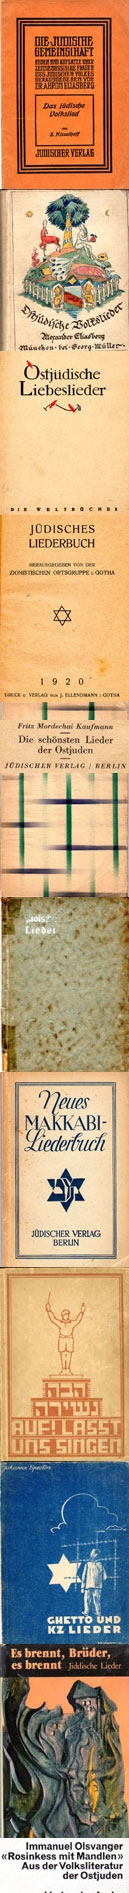 0-Juedische-Ldb-10d.jpg